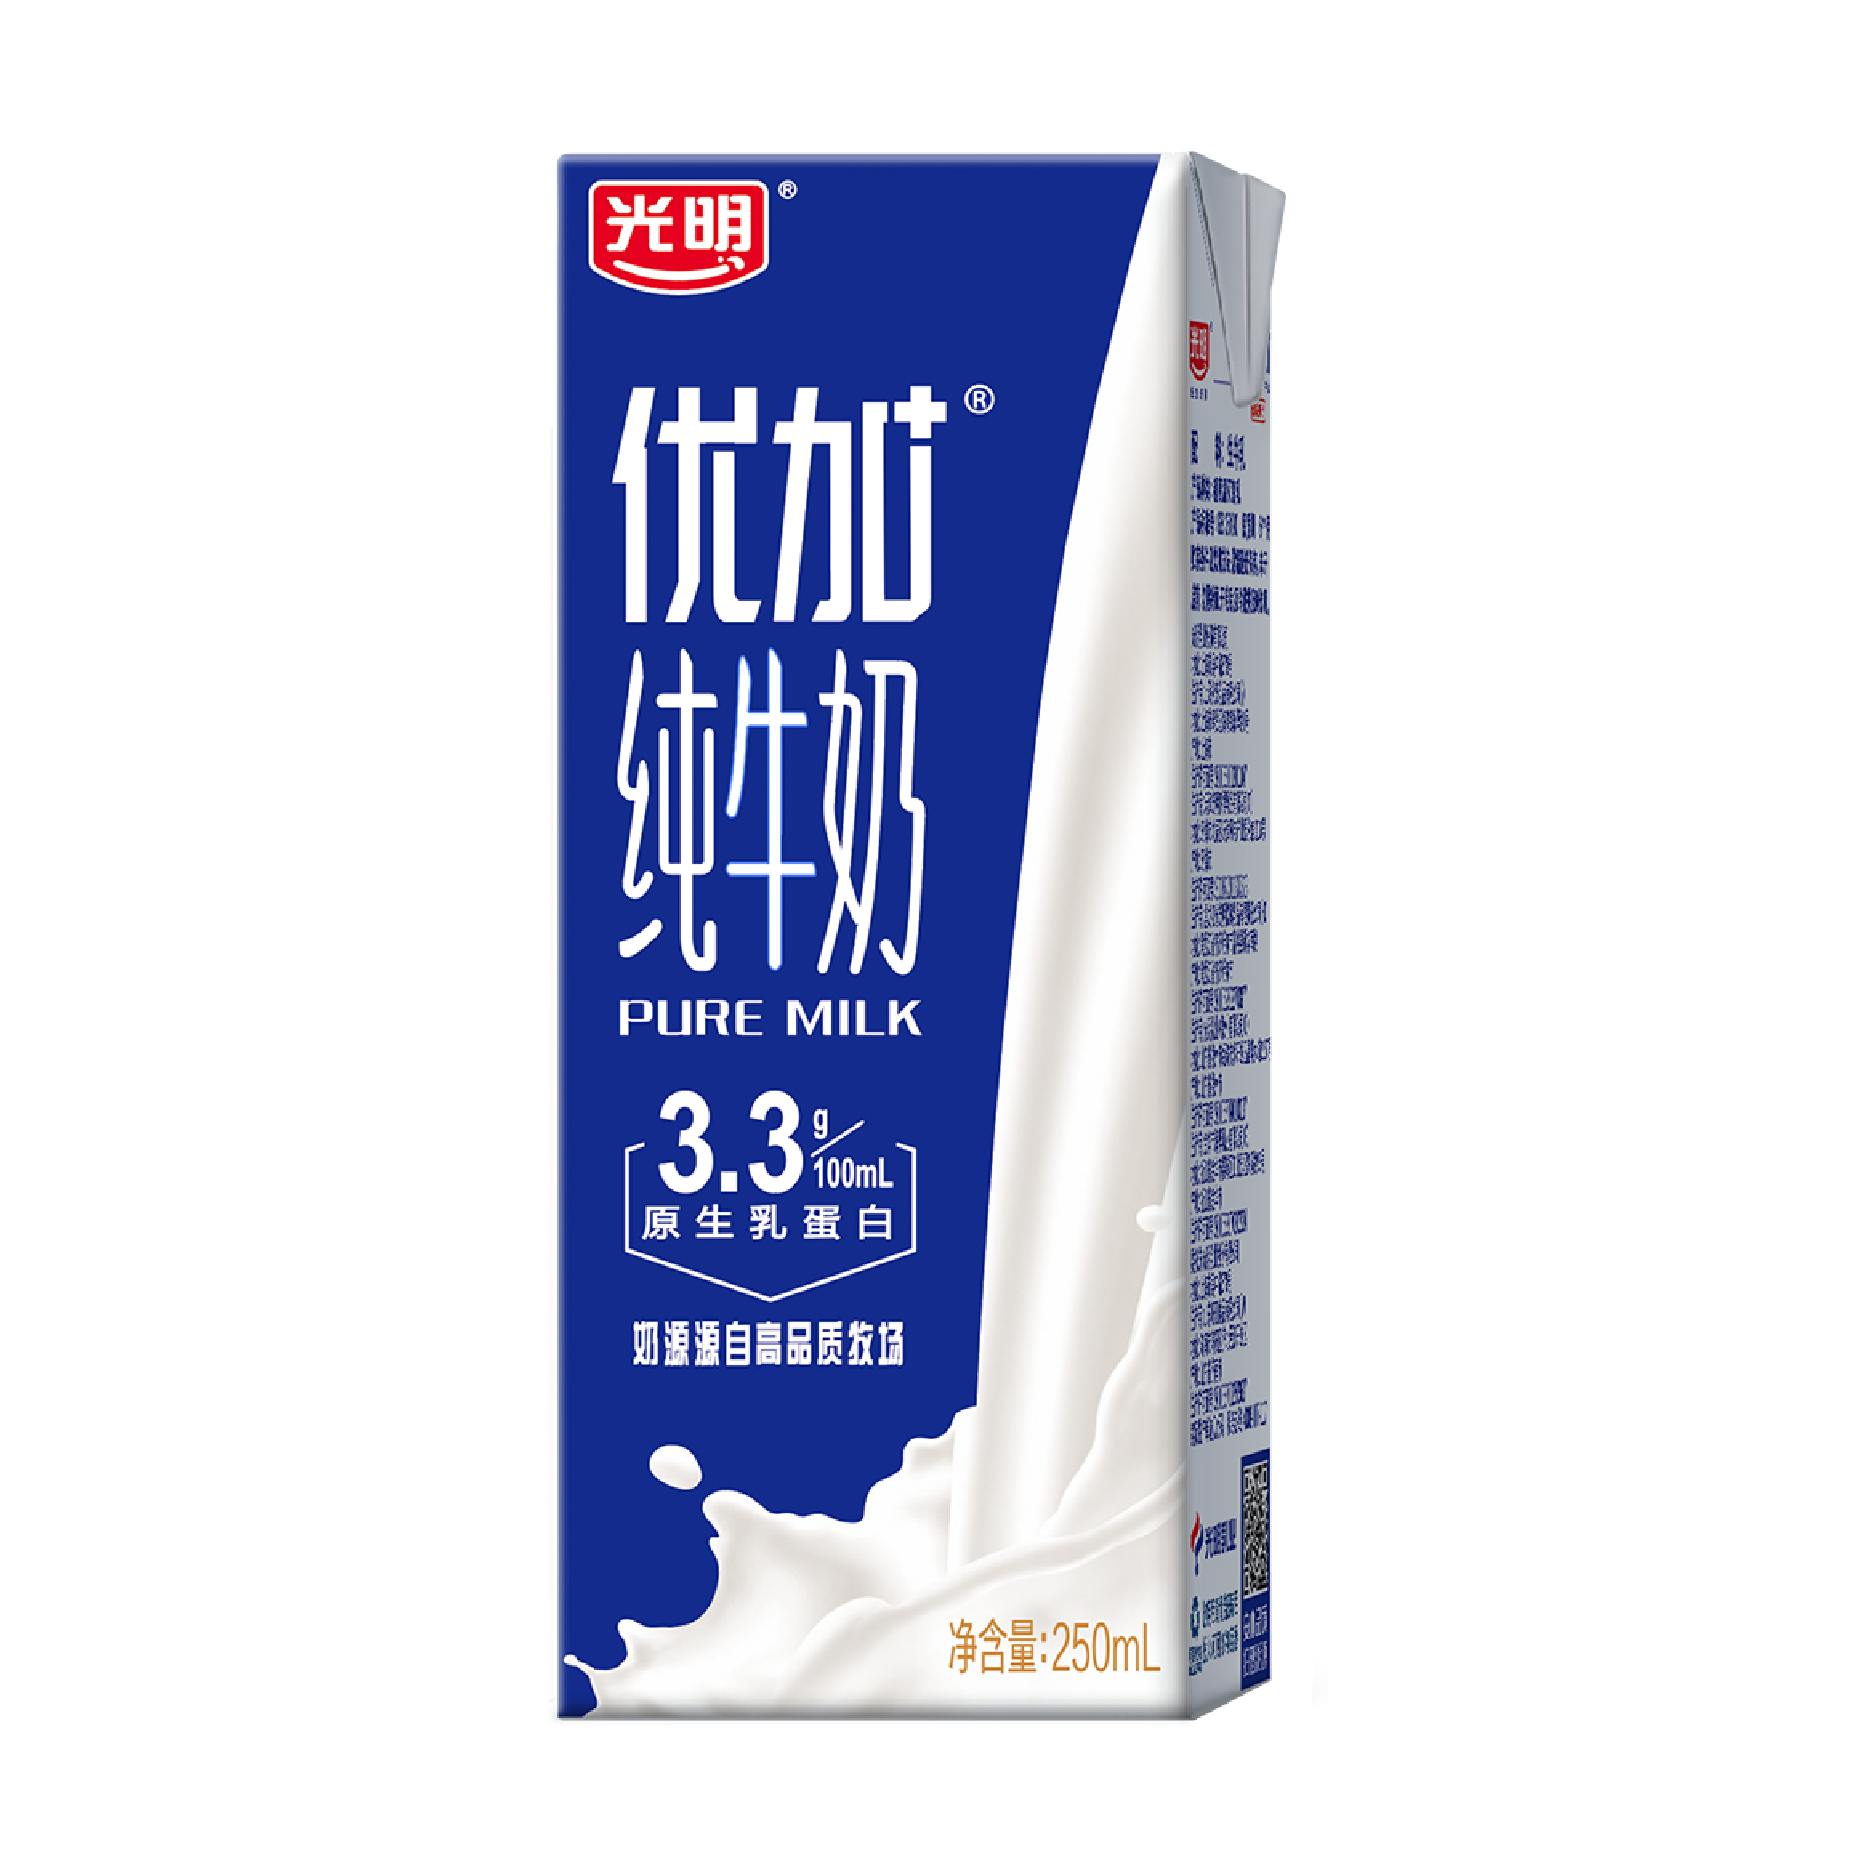 2018年含乳饮料比较试验报告 – 深圳市品质消费研究院–好品质发现者